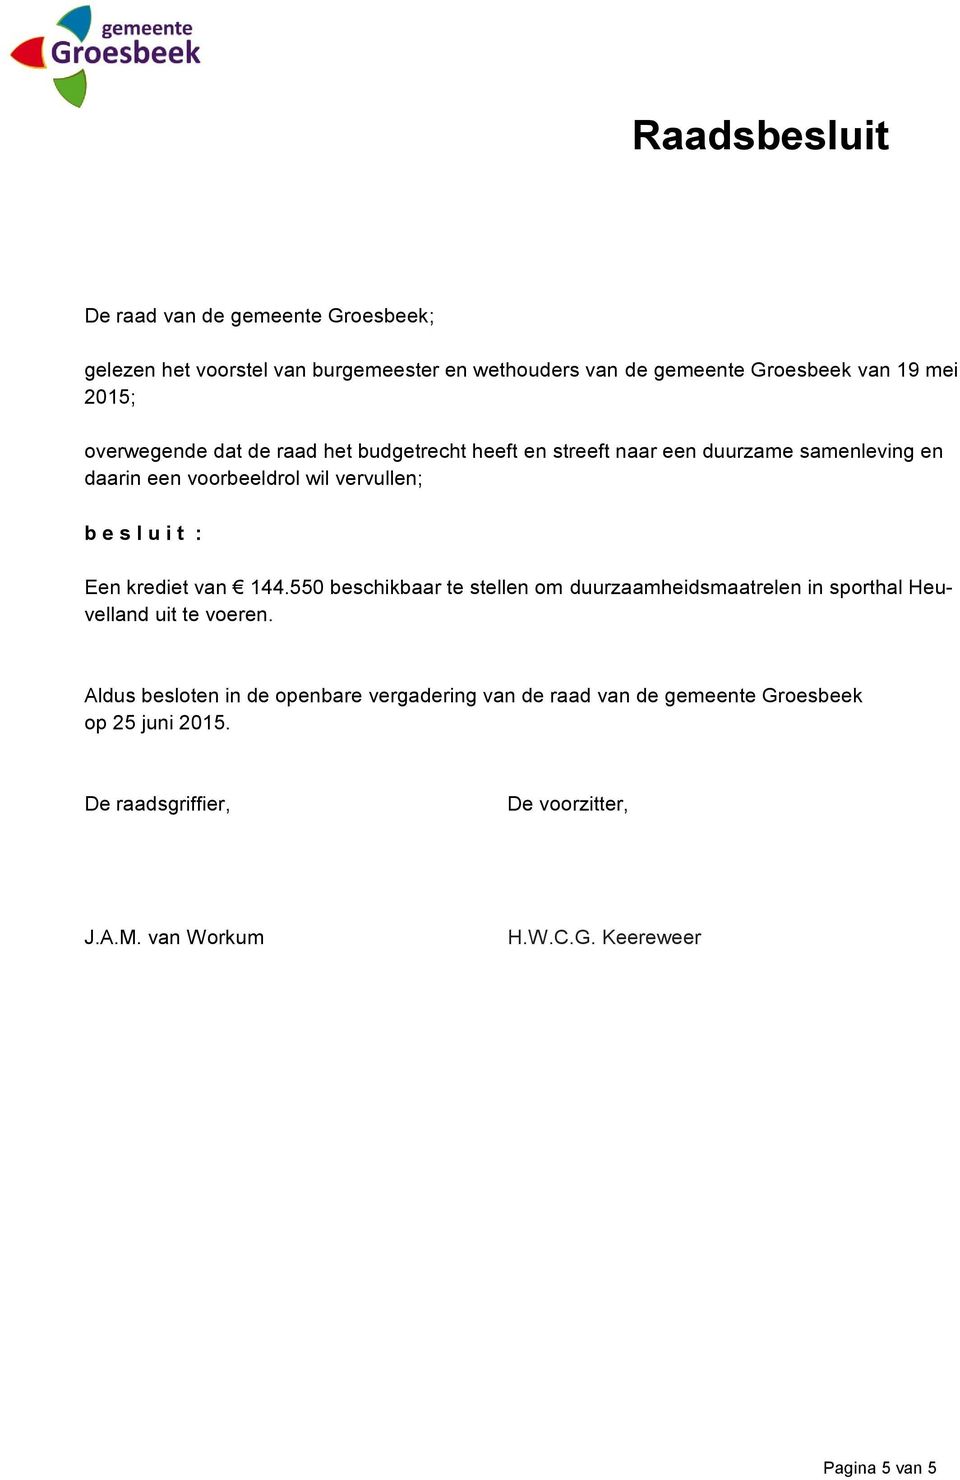 Een krediet van 144.550 beschikbaar te stellen om duurzaamheidsmaatrelen in sporthal Heuvelland uit te voeren.